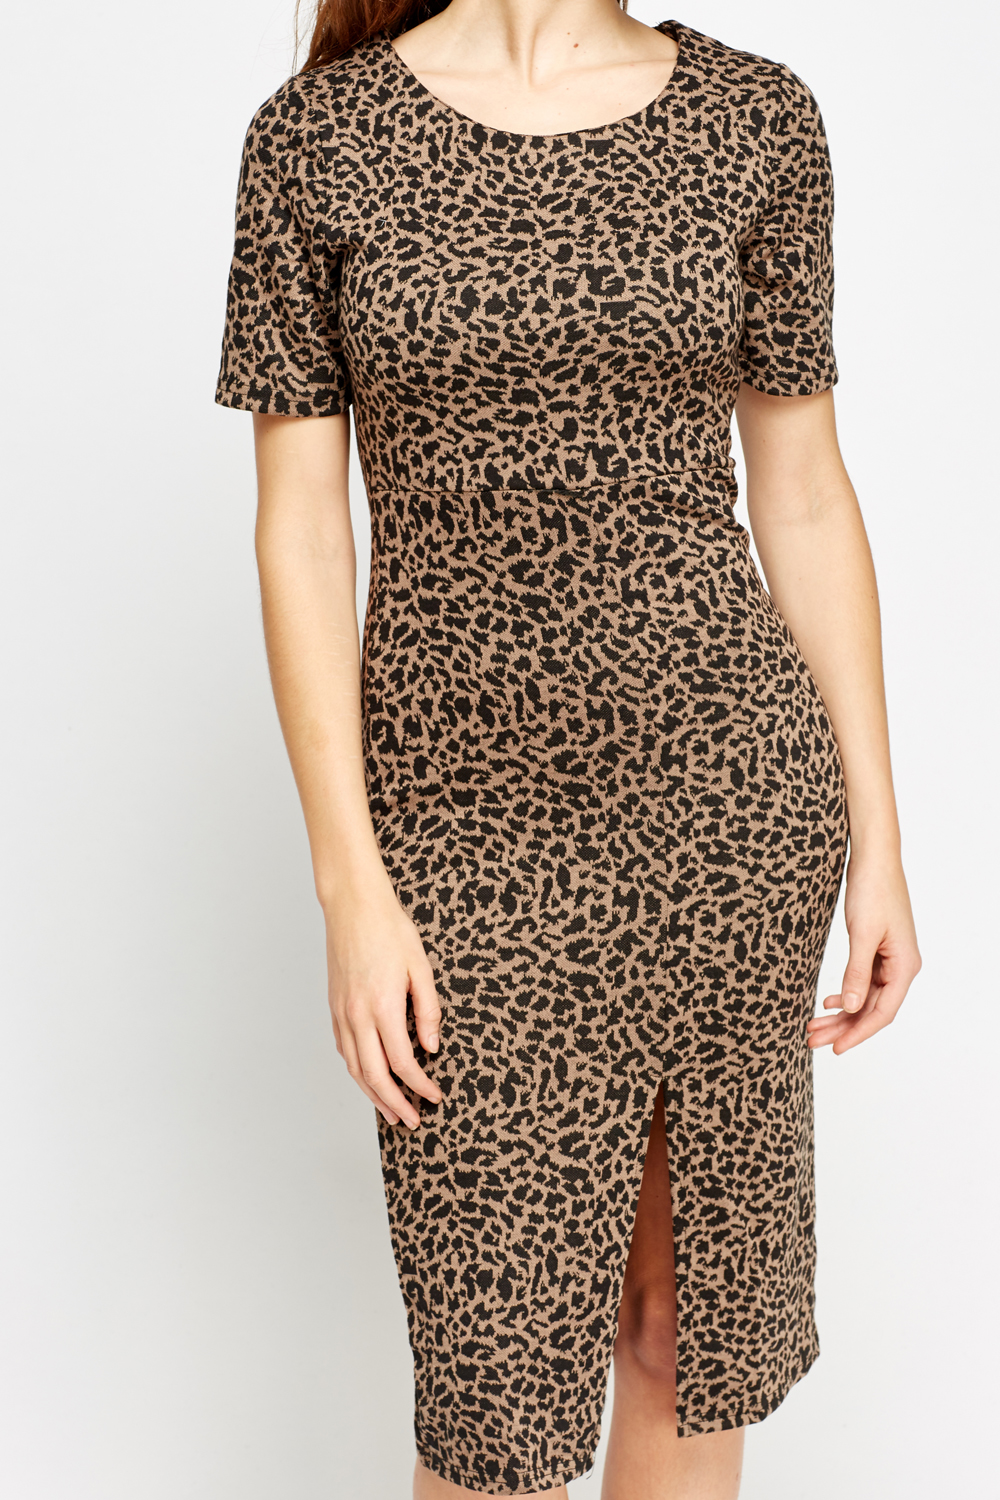 Leopard Print Slit Midi Dress - Just $7